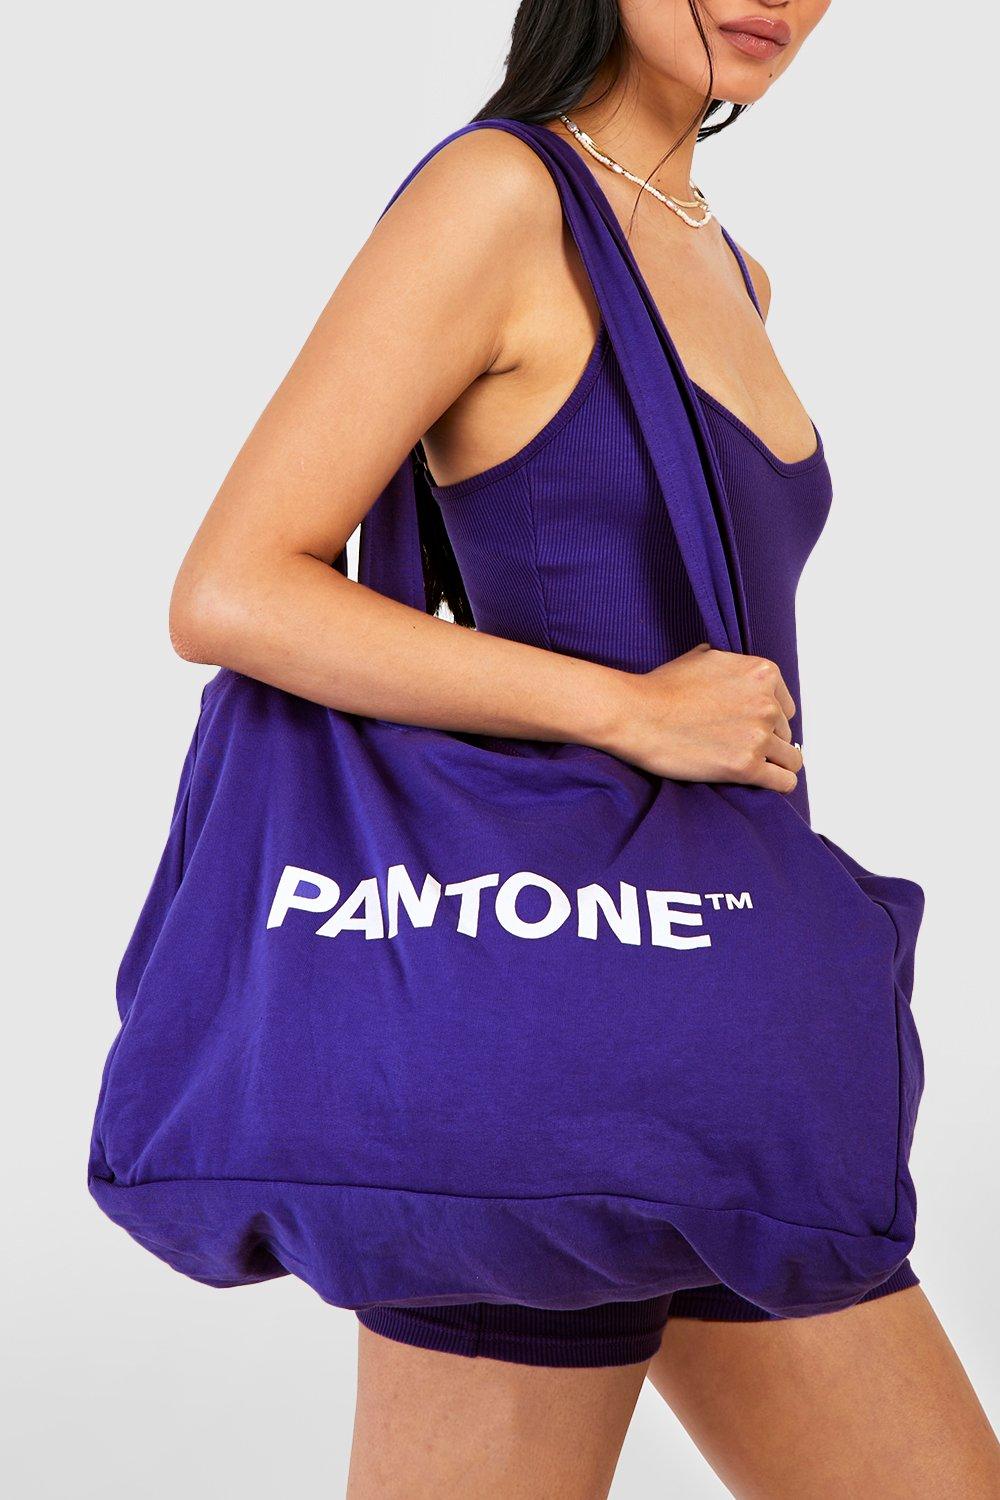 Pantone Shopper Tote Bag